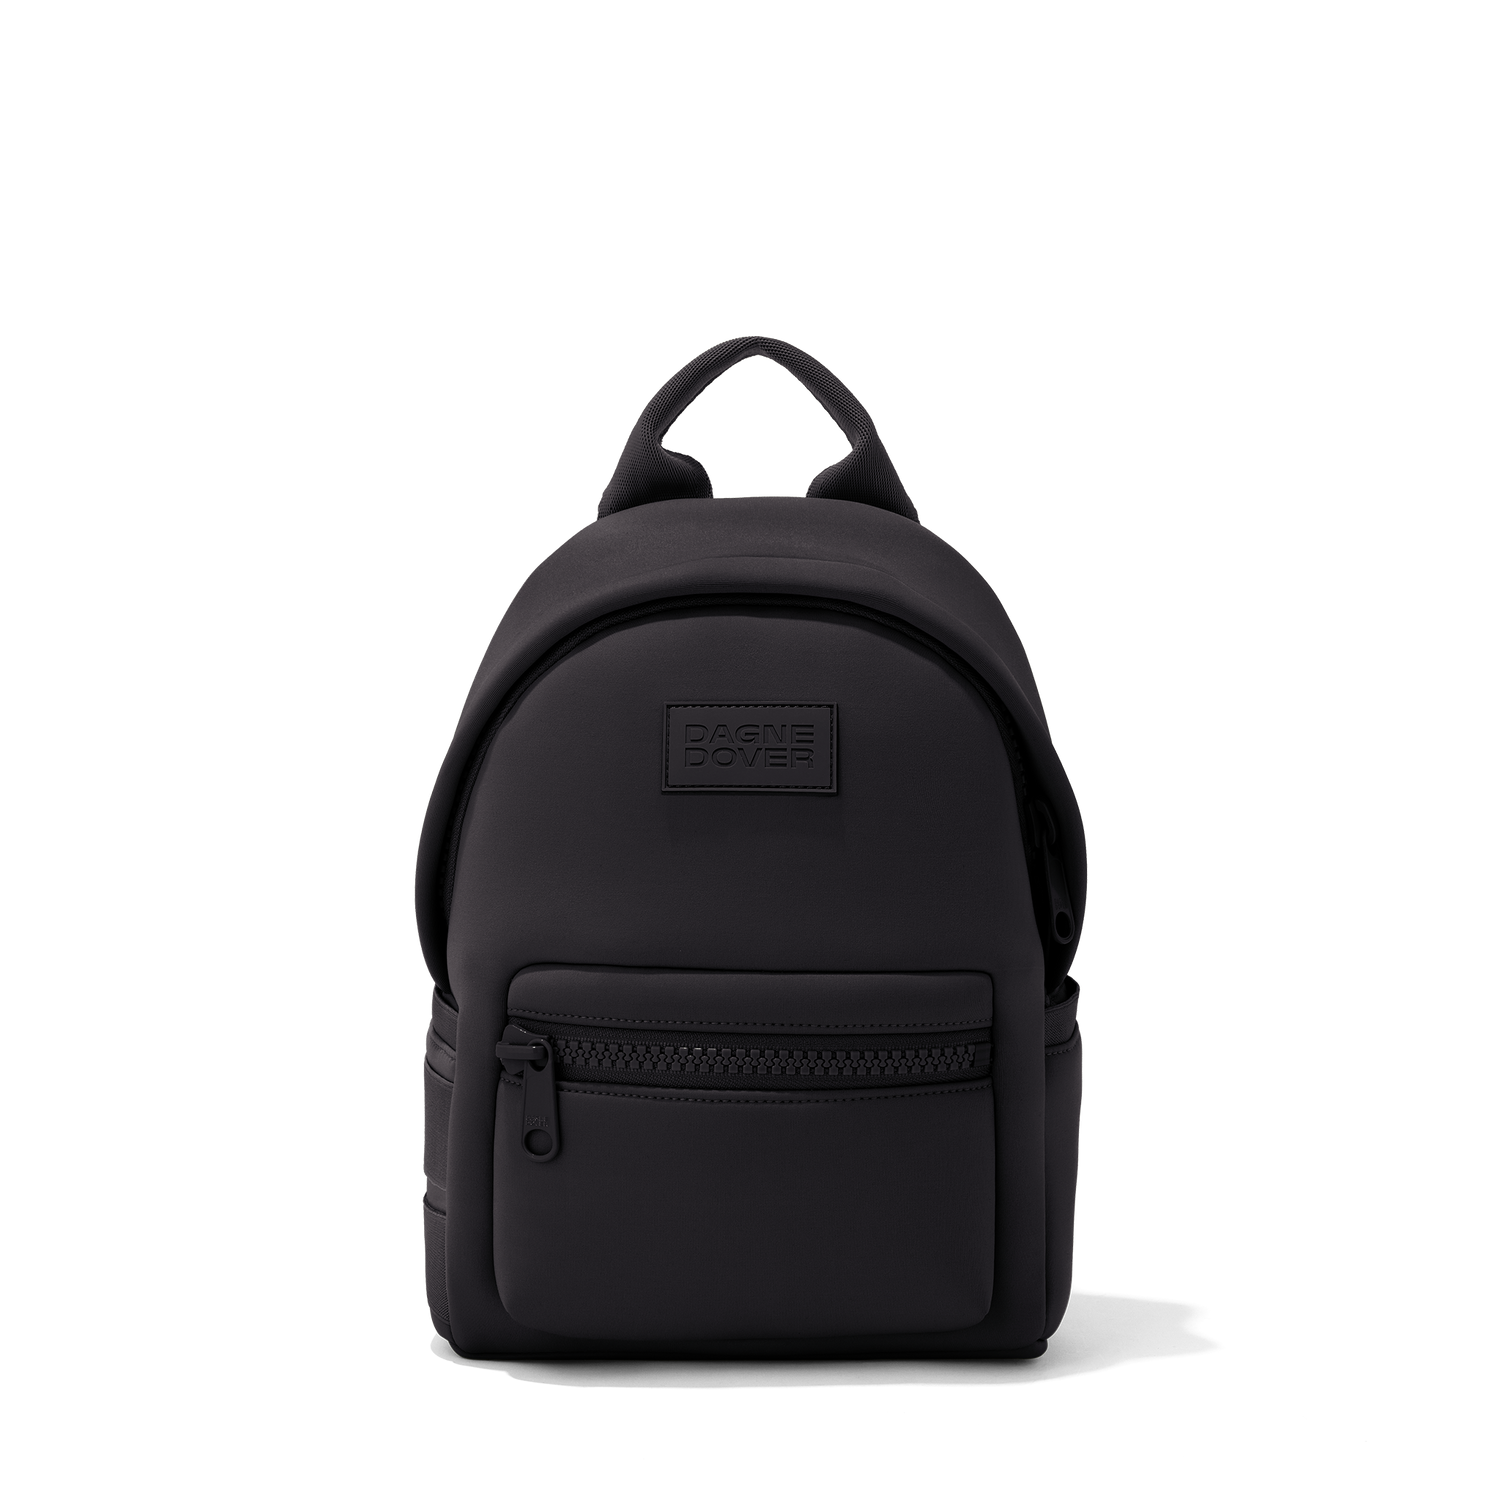 This Dagne Dover Neoprene Backpack Is the Best Backpack I Own